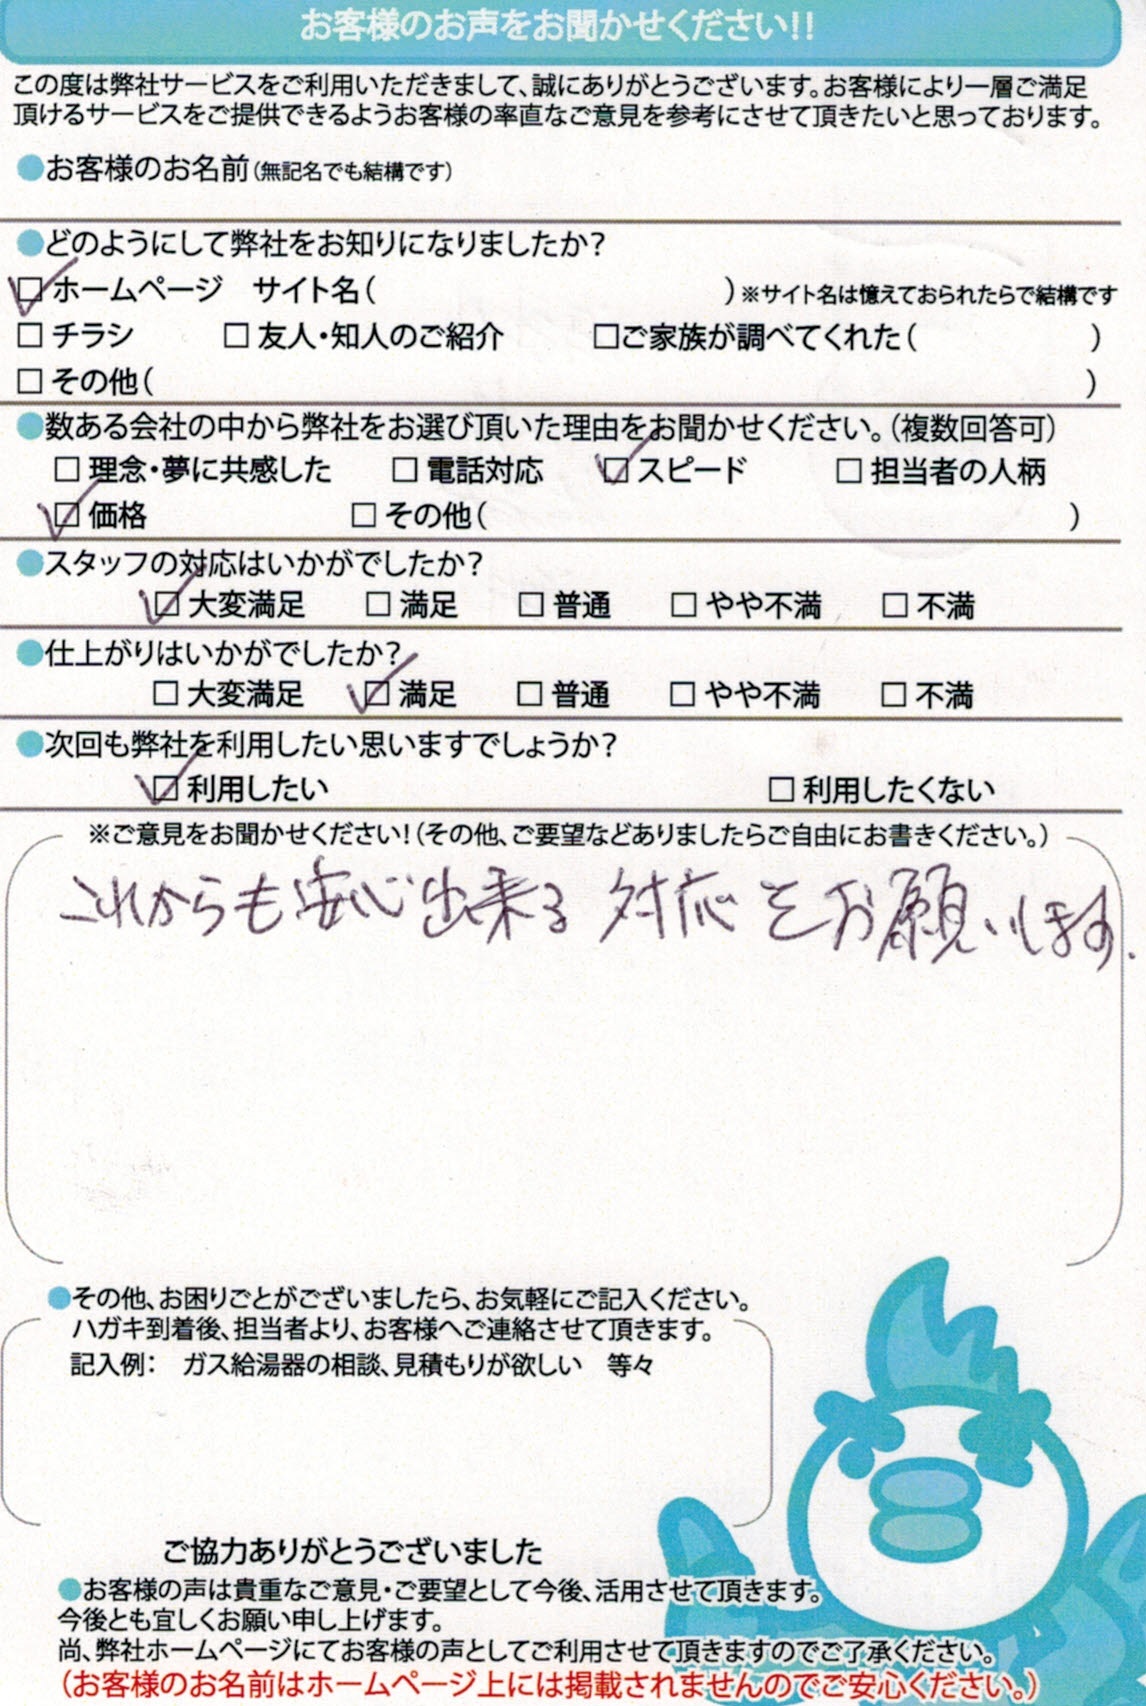 【ハガキ】愛知県海部郡ガス給湯器交換工事お客様の声【アンシンサービス24】